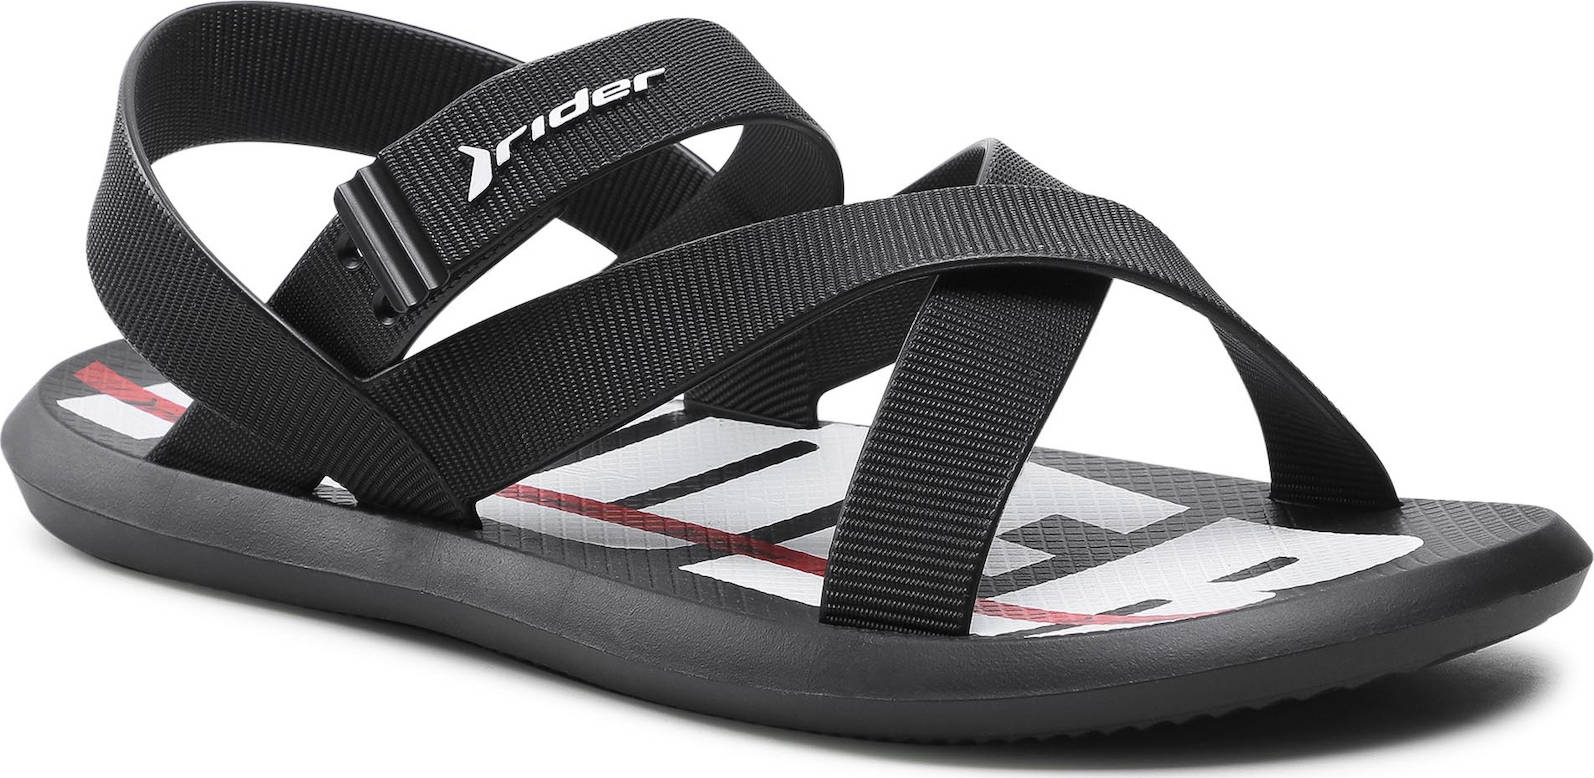 Pánská letní obuv, sandály Rider R1